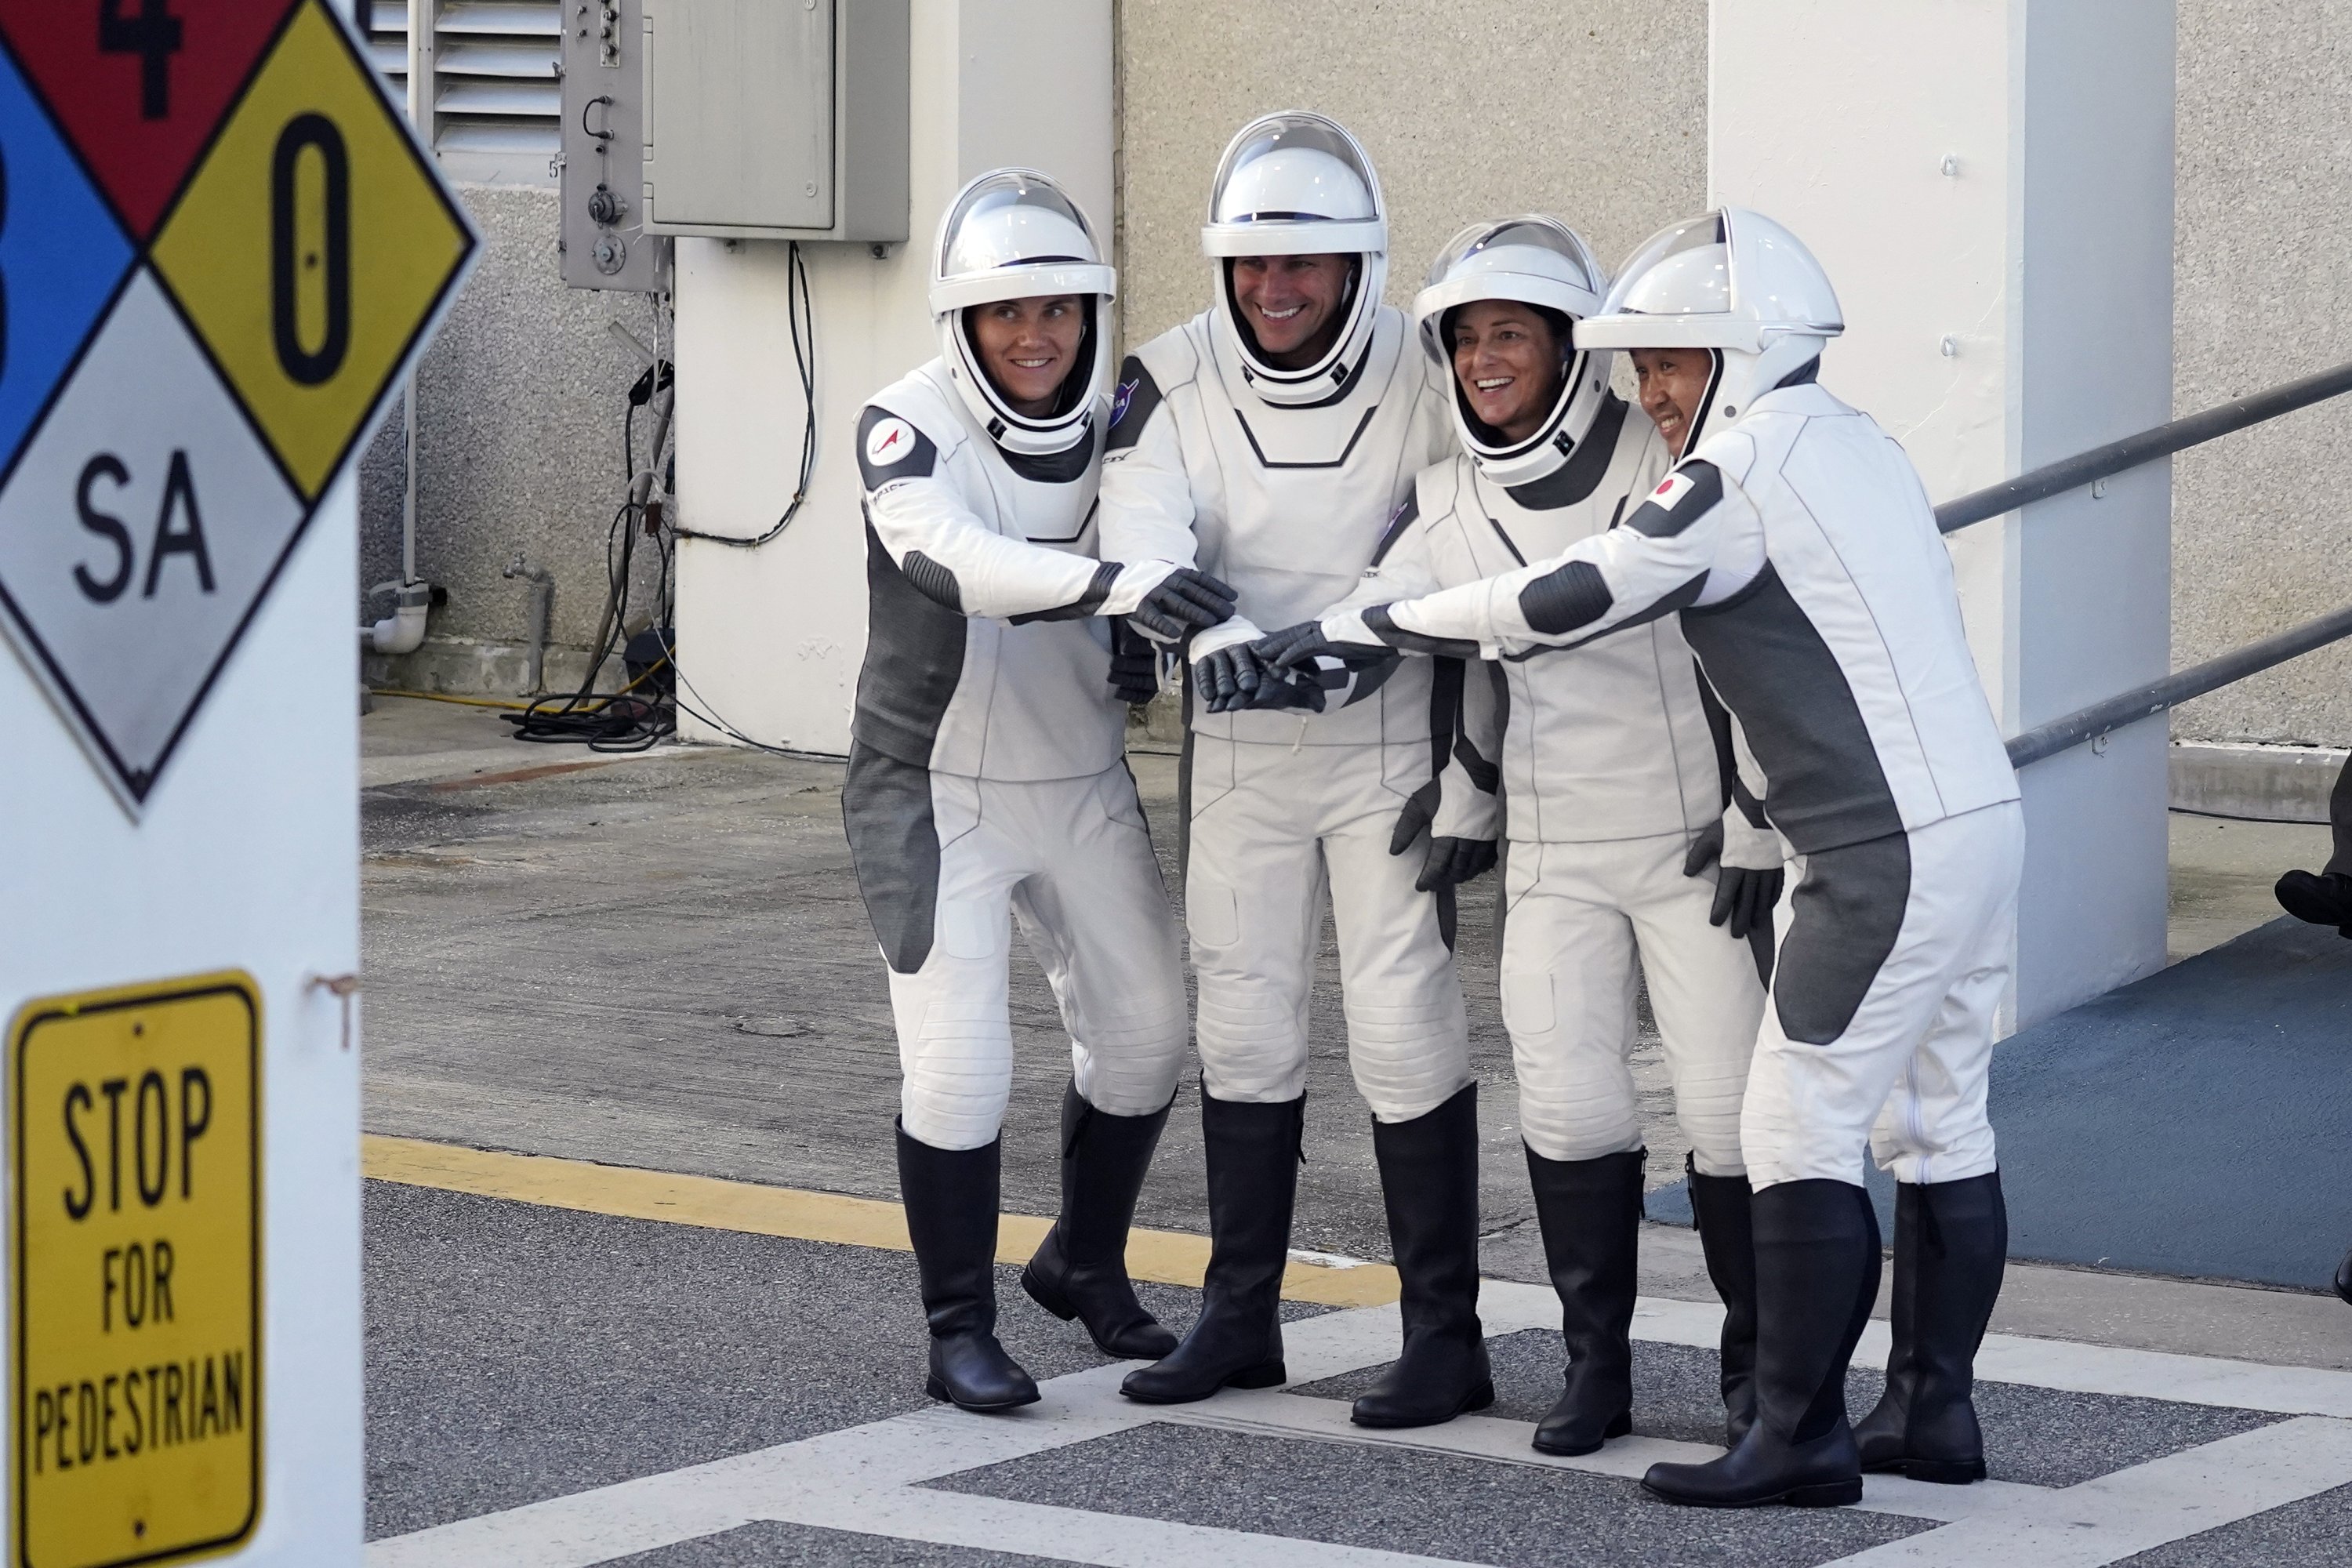 Astronot SpaceX Crew5 (dari kiri) Anna Kikina, dari Rusia, Josh Cassada, Nicole Mann, dan Koichi Wakata, dari Jepang, berpose untuk foto saat mereka meninggalkan gedung Operations and Checkout sebelum menuju Launch Pad 39-A di Kennedy Space Center , Cape Canaveral, Florida, AS, 5 Oktober 2022. (AP Photo/John Raoux)